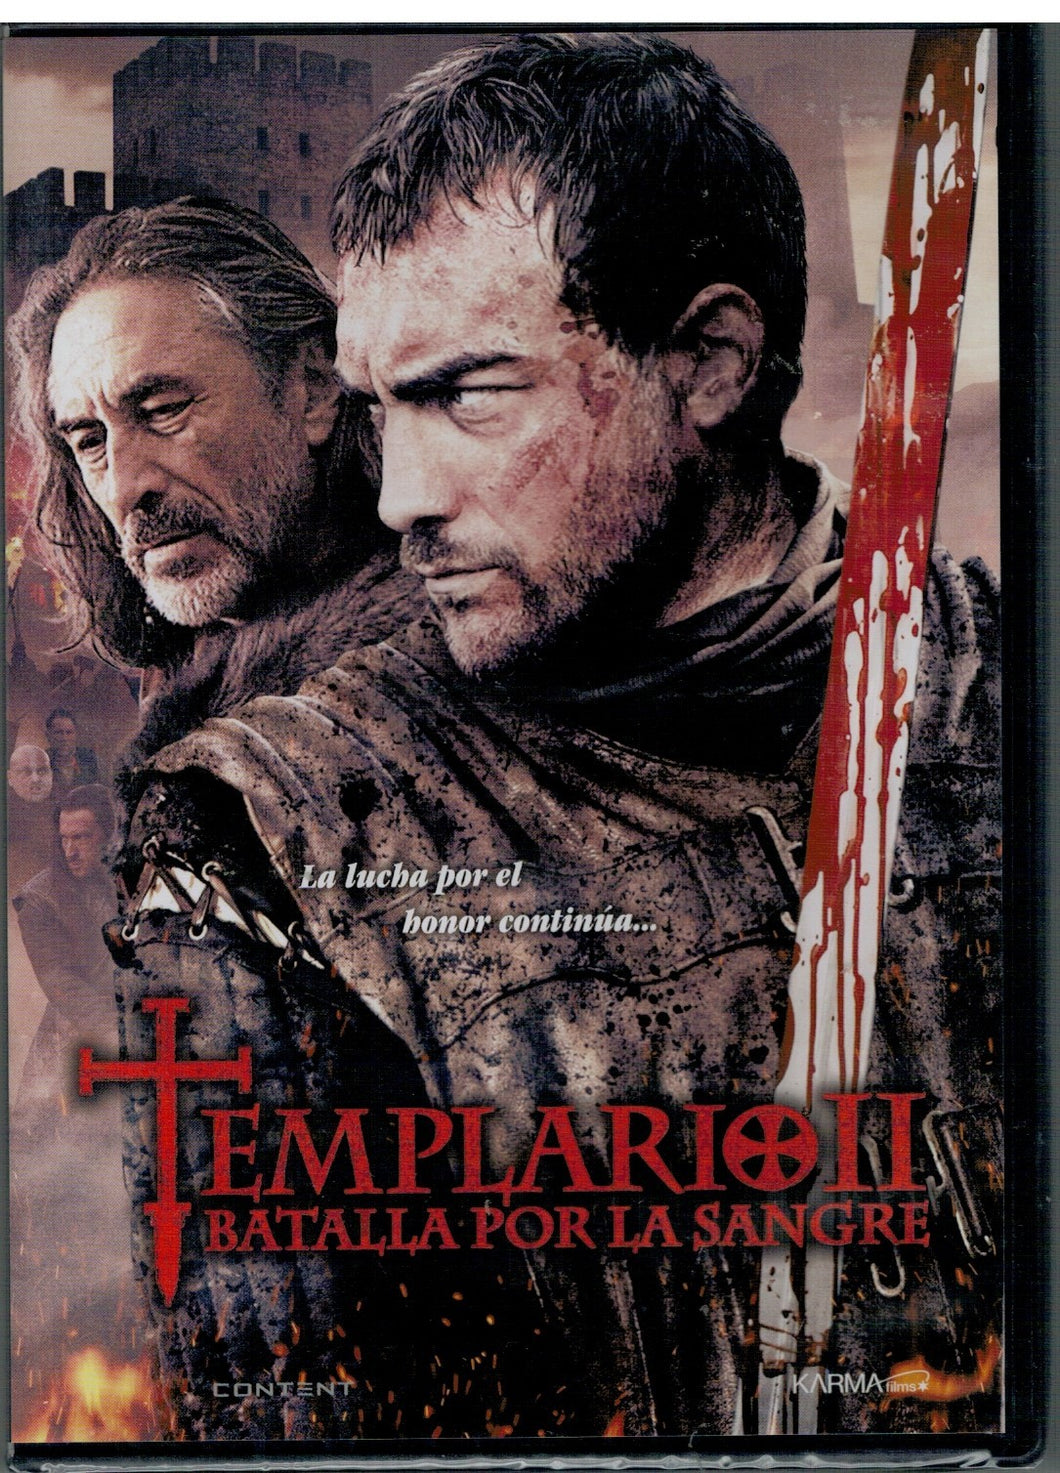 Templario II - Batalla por la sangre (DVD Nuevo)